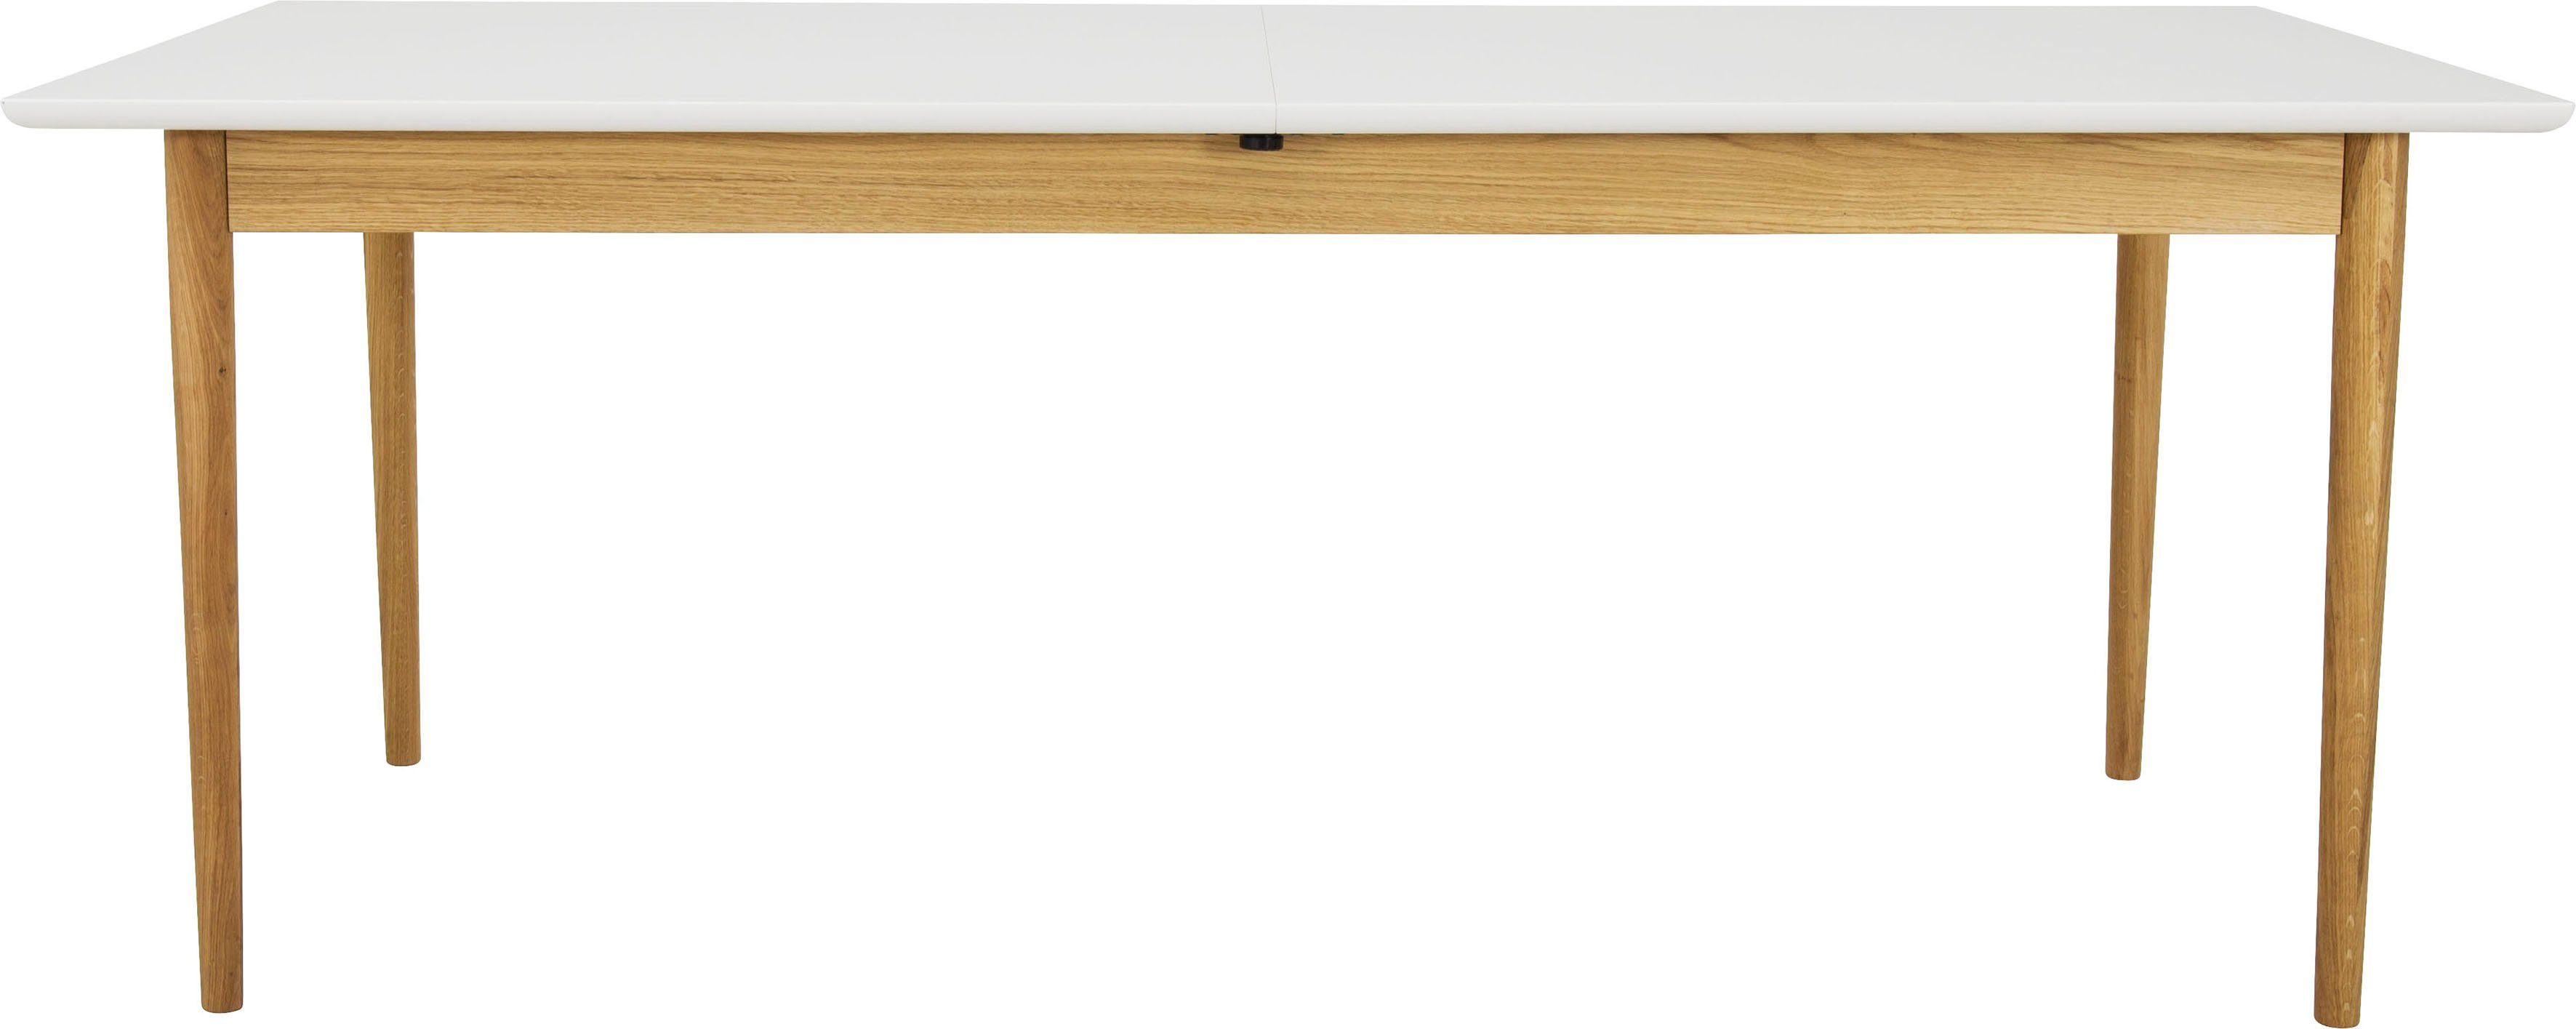 Tenzo Esstisch SVEA, mit Ausziehfunktion, Design von Tenzo Design studio,  Breite 195/275 cm